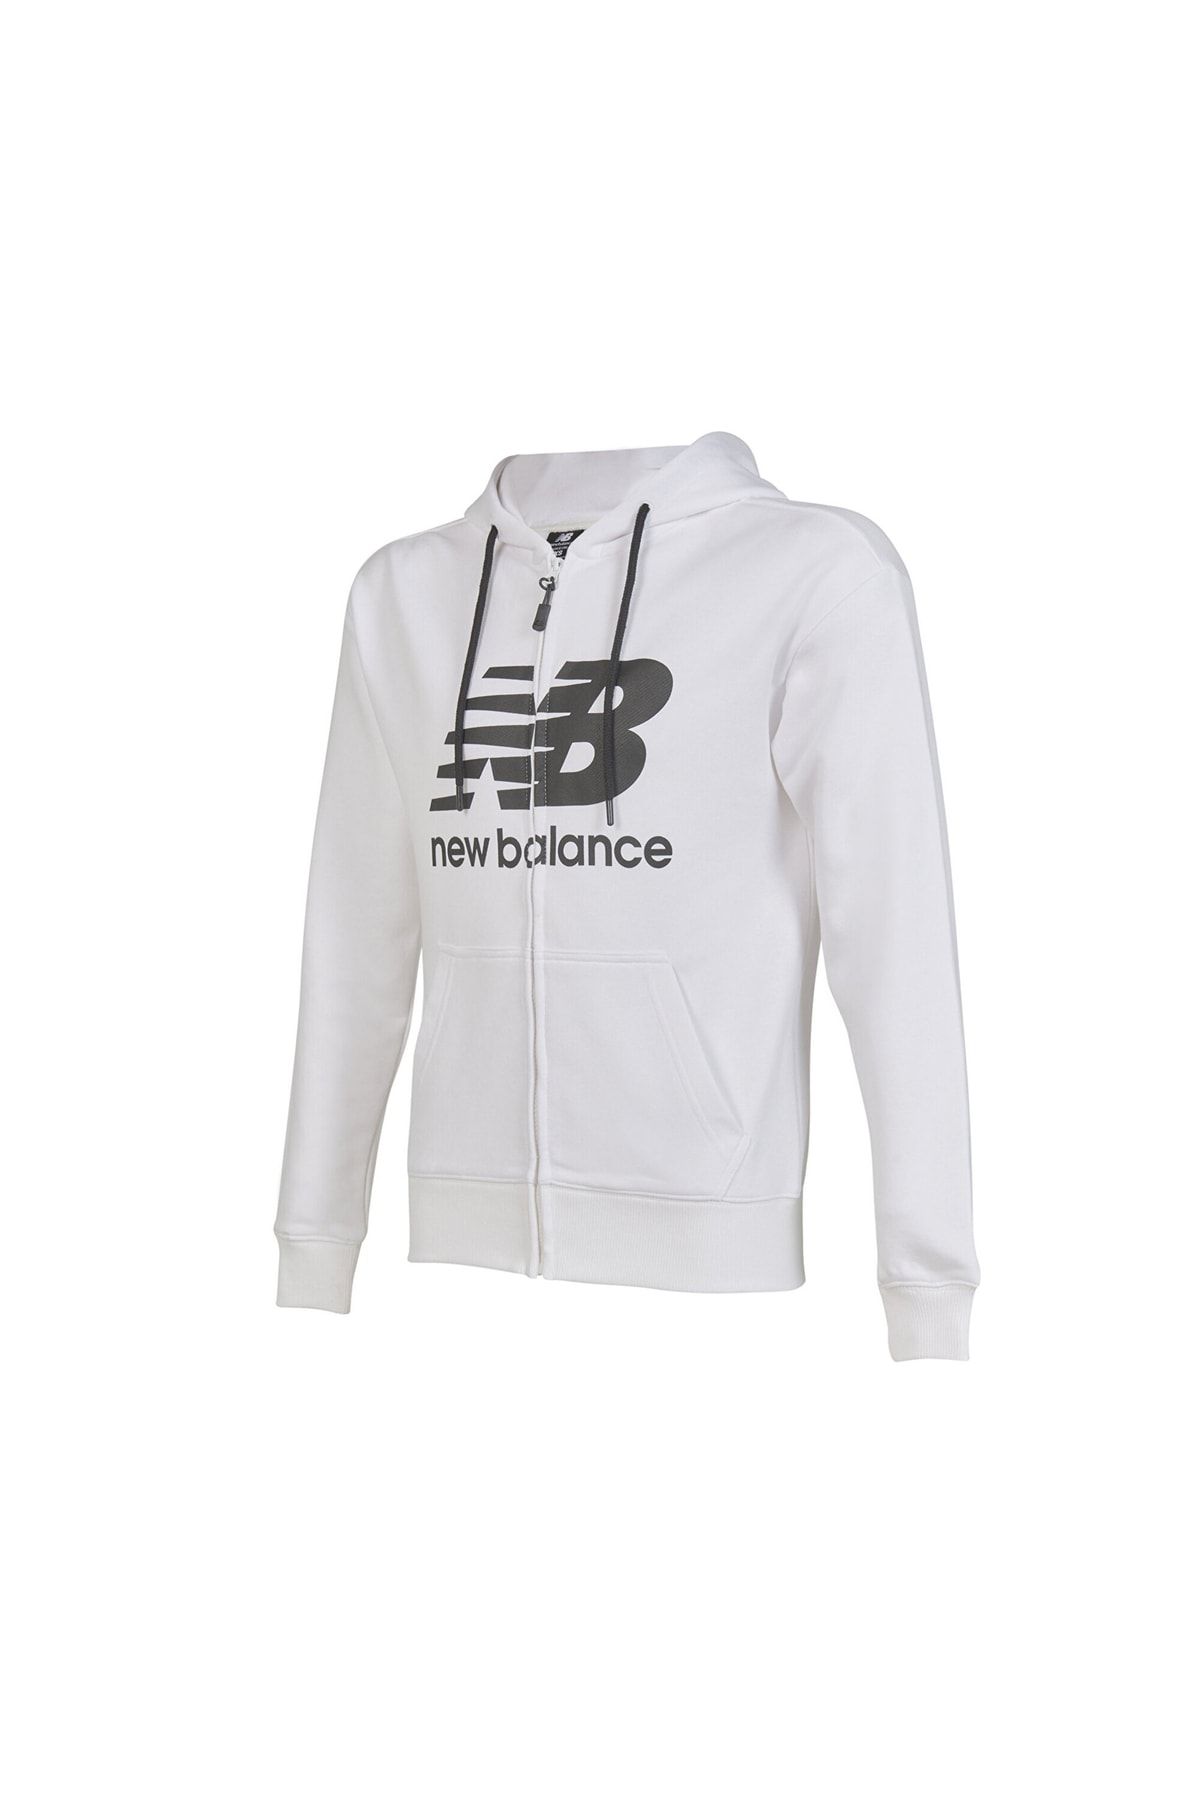 New Balance Unh1306 Wt Erkek Günlük Sweatshirts Unh1306-wt Beyaz